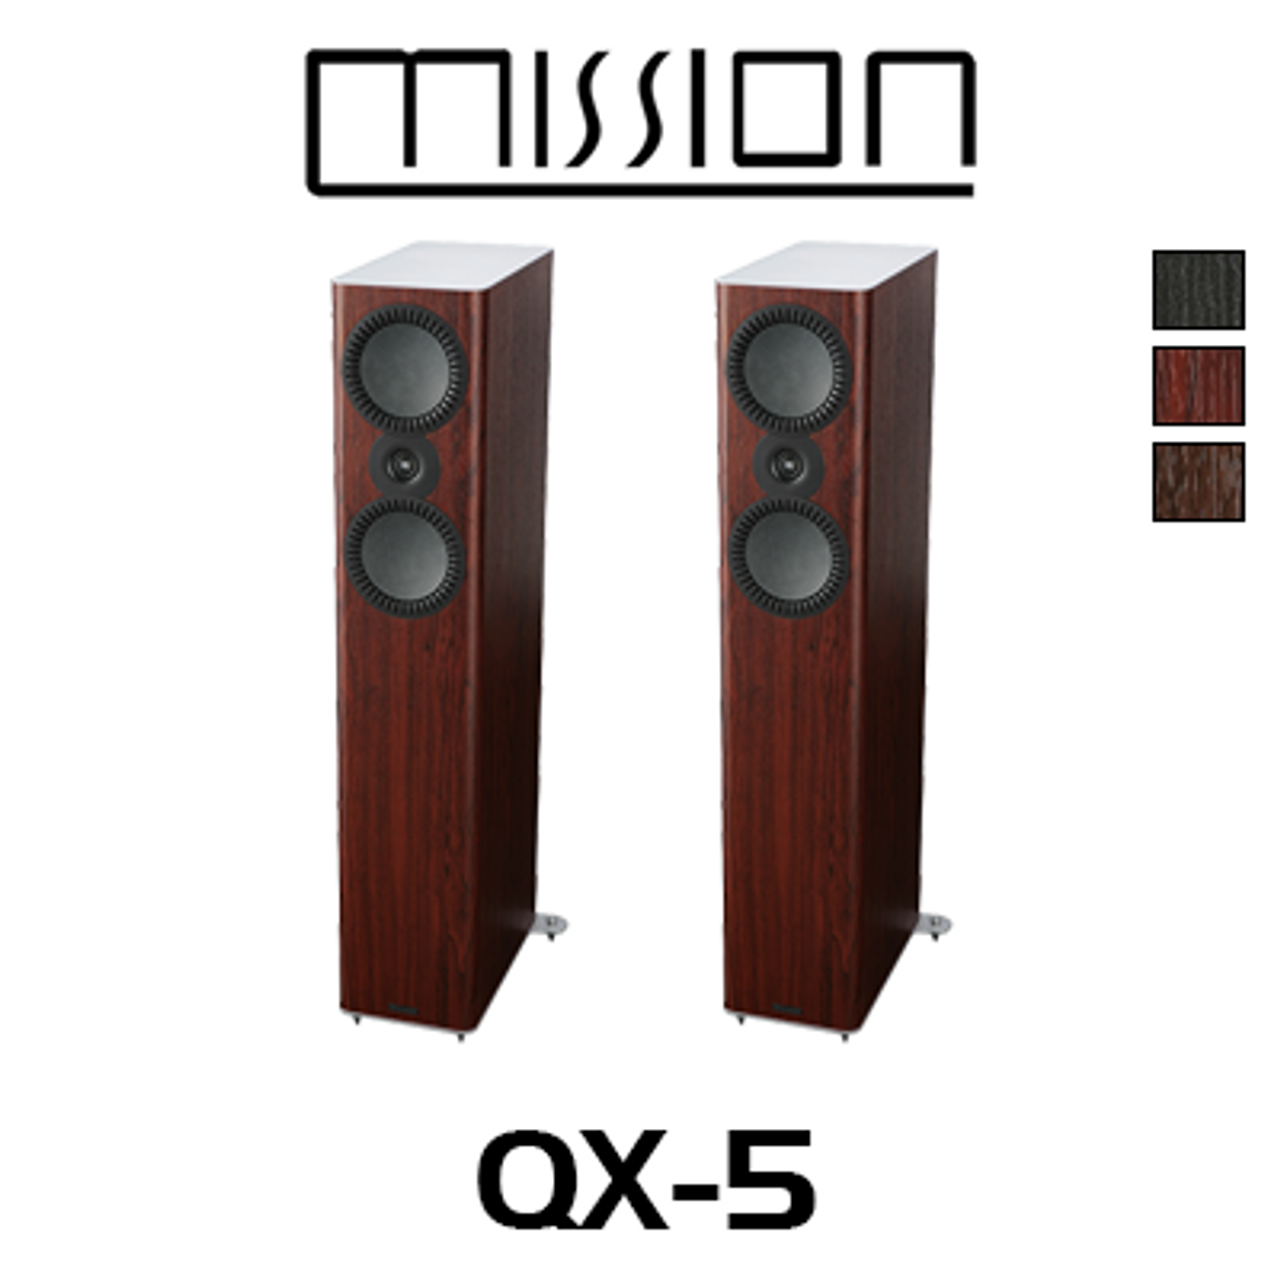 Mission Qx 5 12 3 Way Floorstanding Speakers Av Australia Online